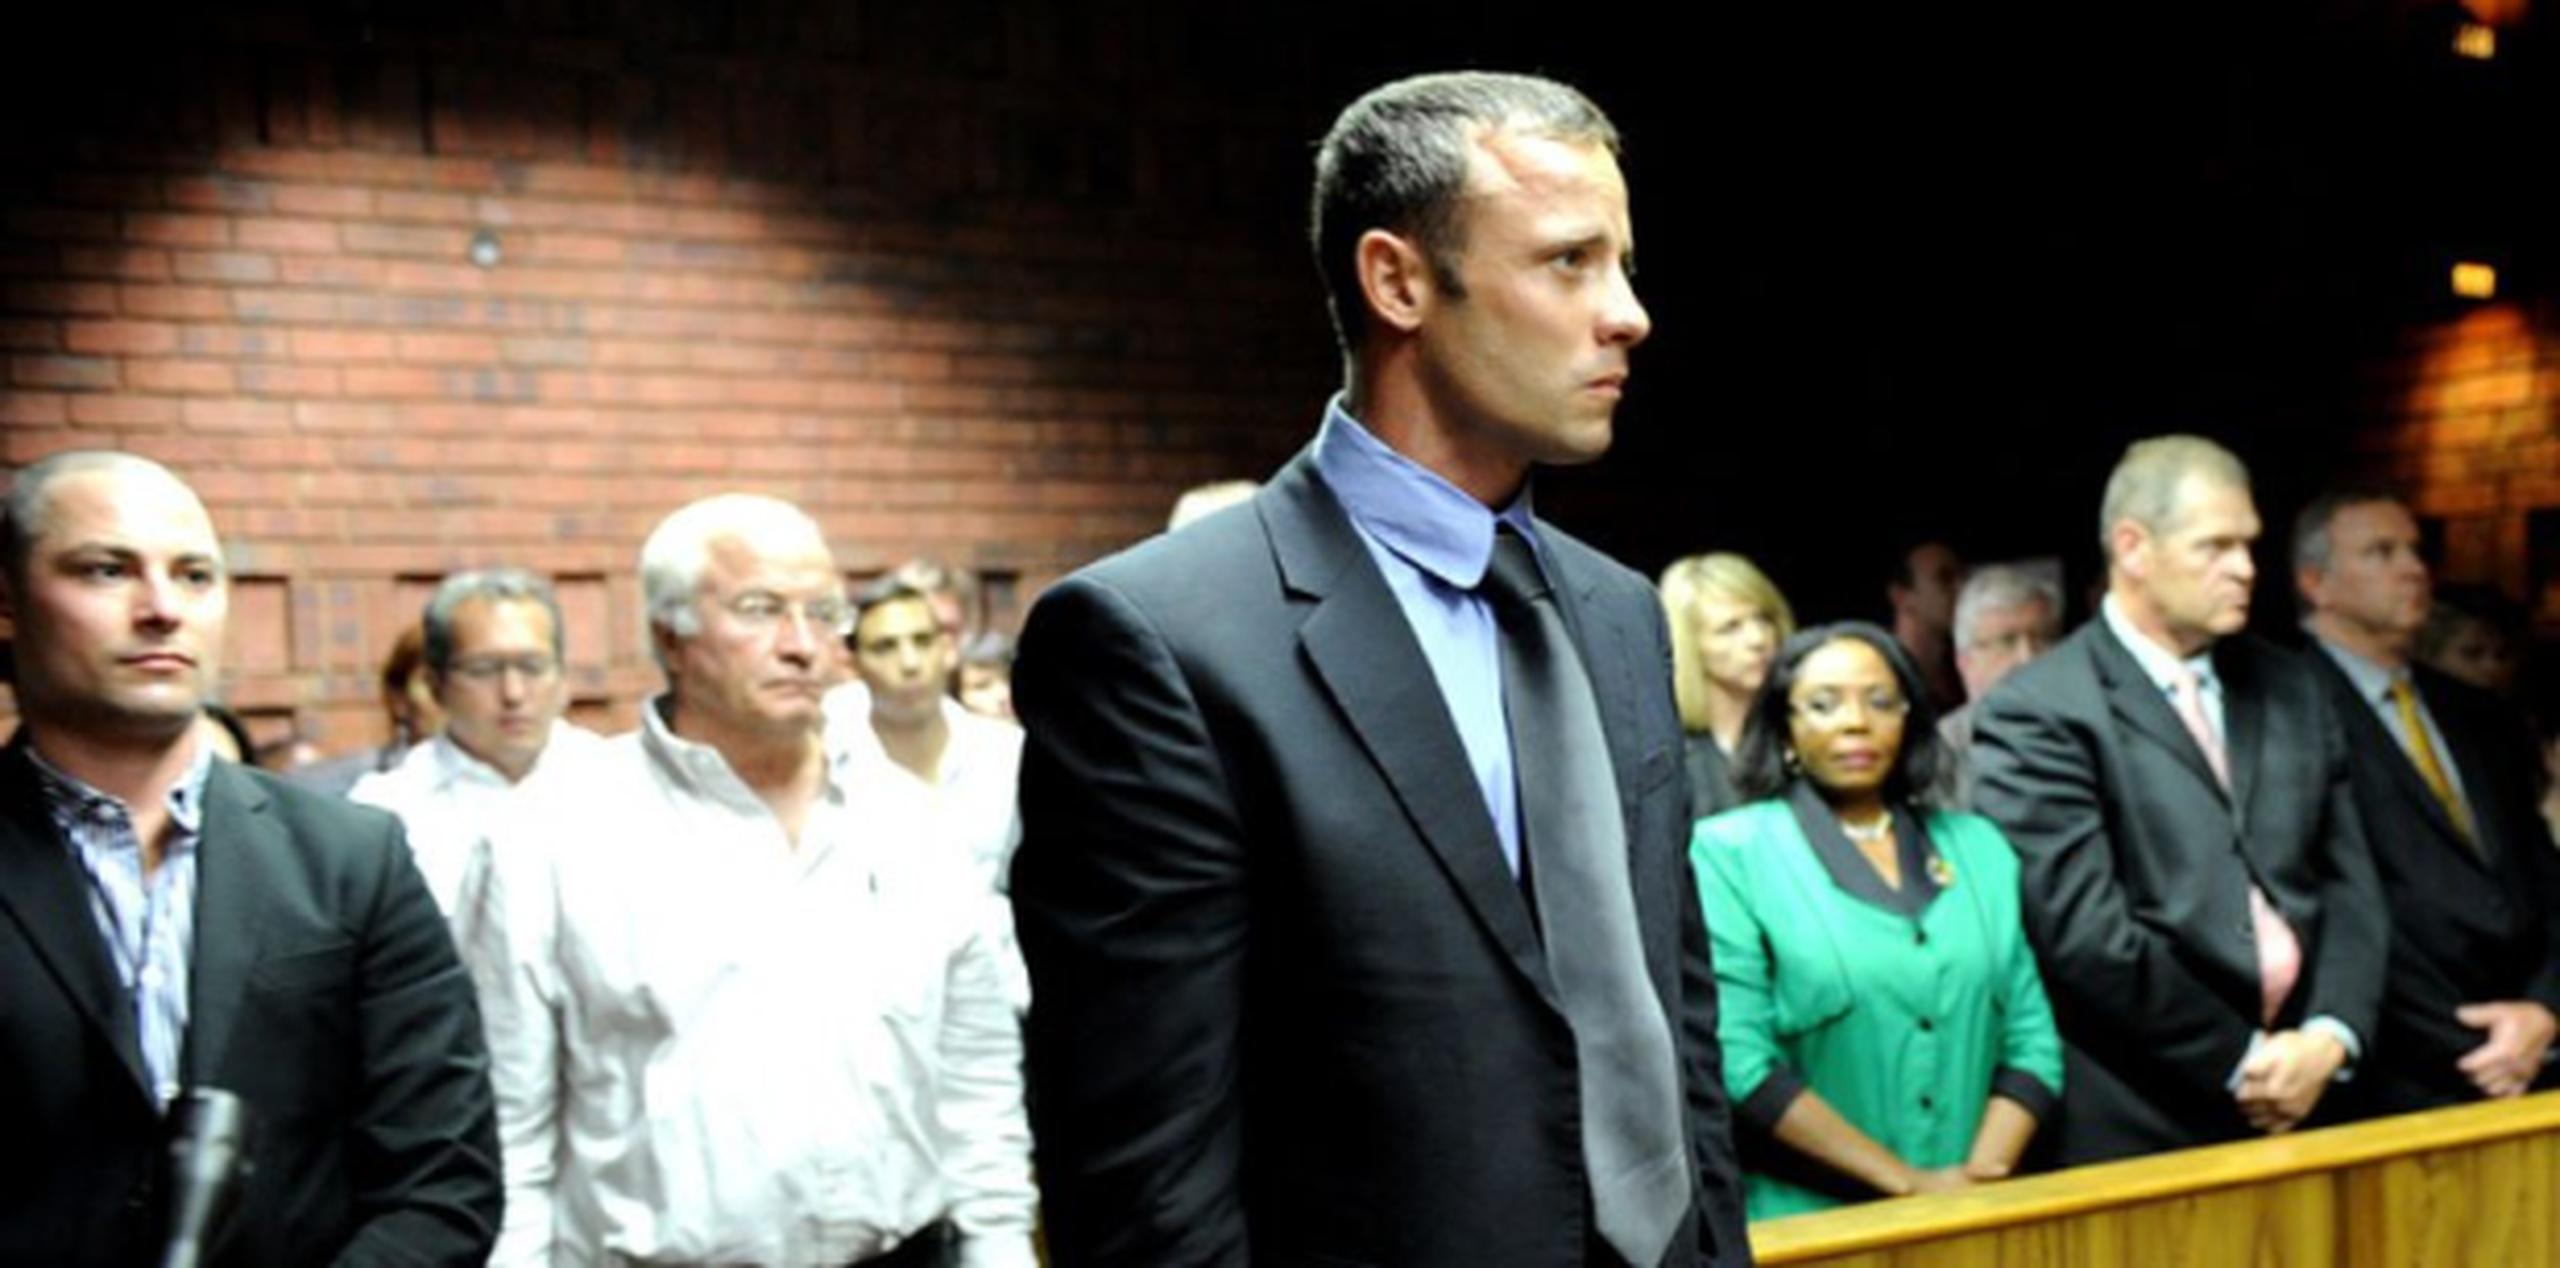 Pistorius disparó a Reeva Steenkamp, de 29 años, en las primeras horas del 14 de febrero porque según él pensaba que era un intruso. (Archivo)